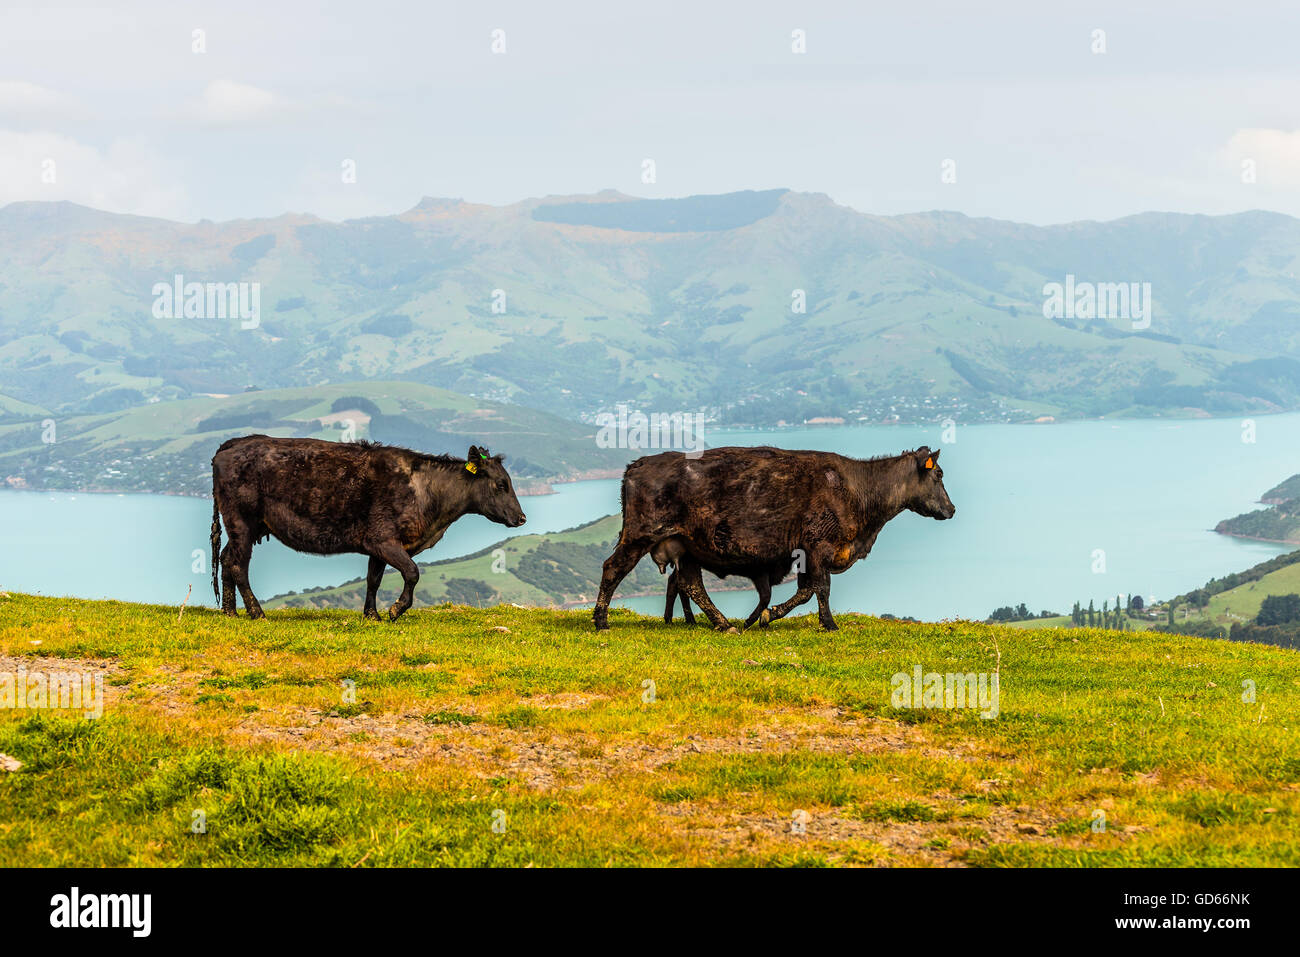 Les vaches et veaux balade le long de la colline et du paysage rural, région de l'Otago, île du Sud, Nouvelle-Zélande Banque D'Images